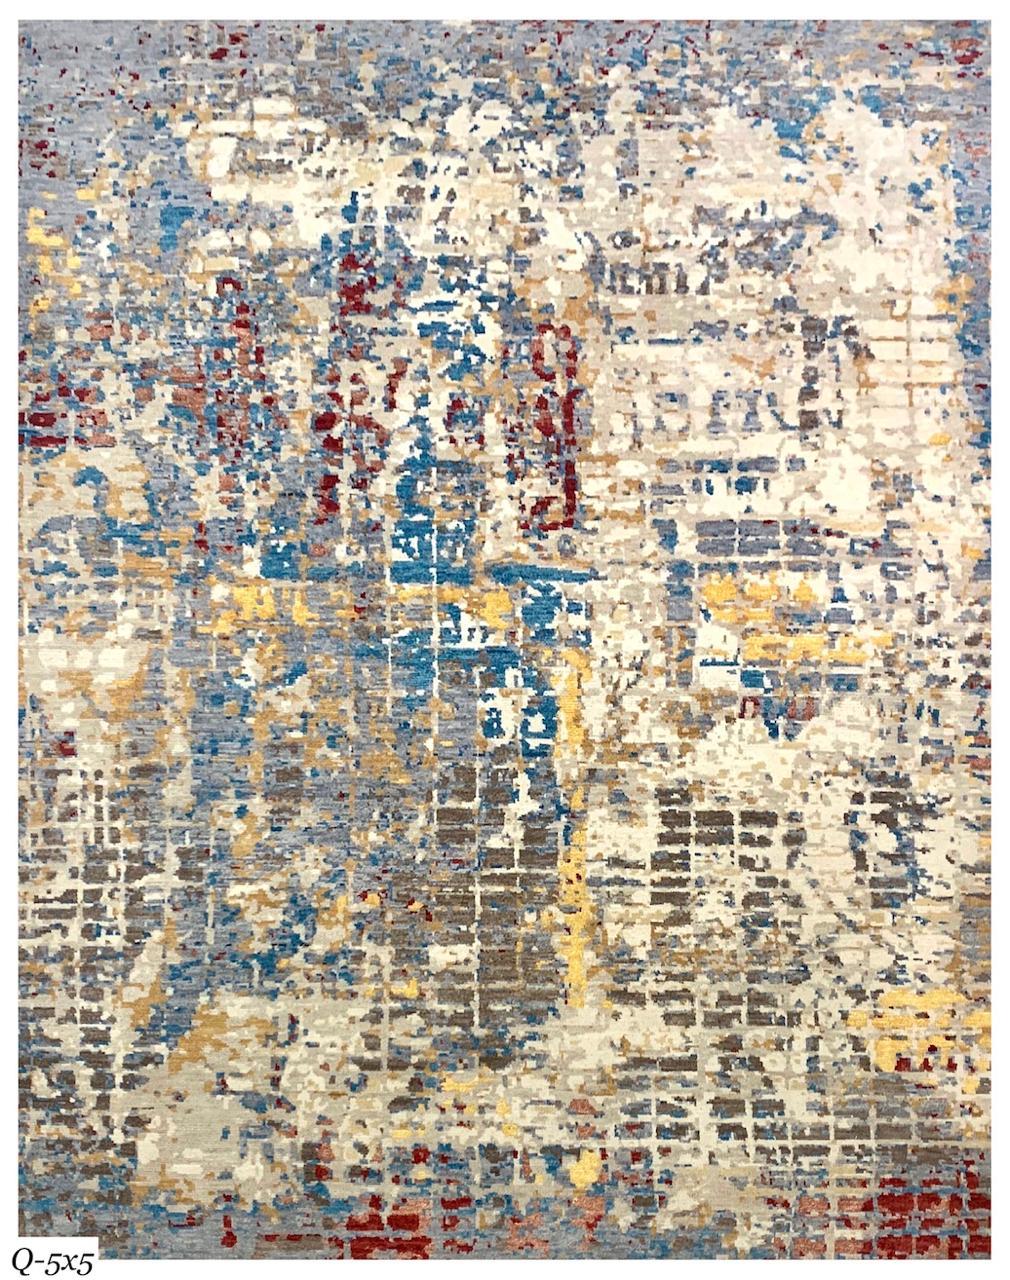 Joli tapis contemporain au design abstrait avec de belles couleurs, entièrement noué à la main avec du velours de laine sur une base de coton.